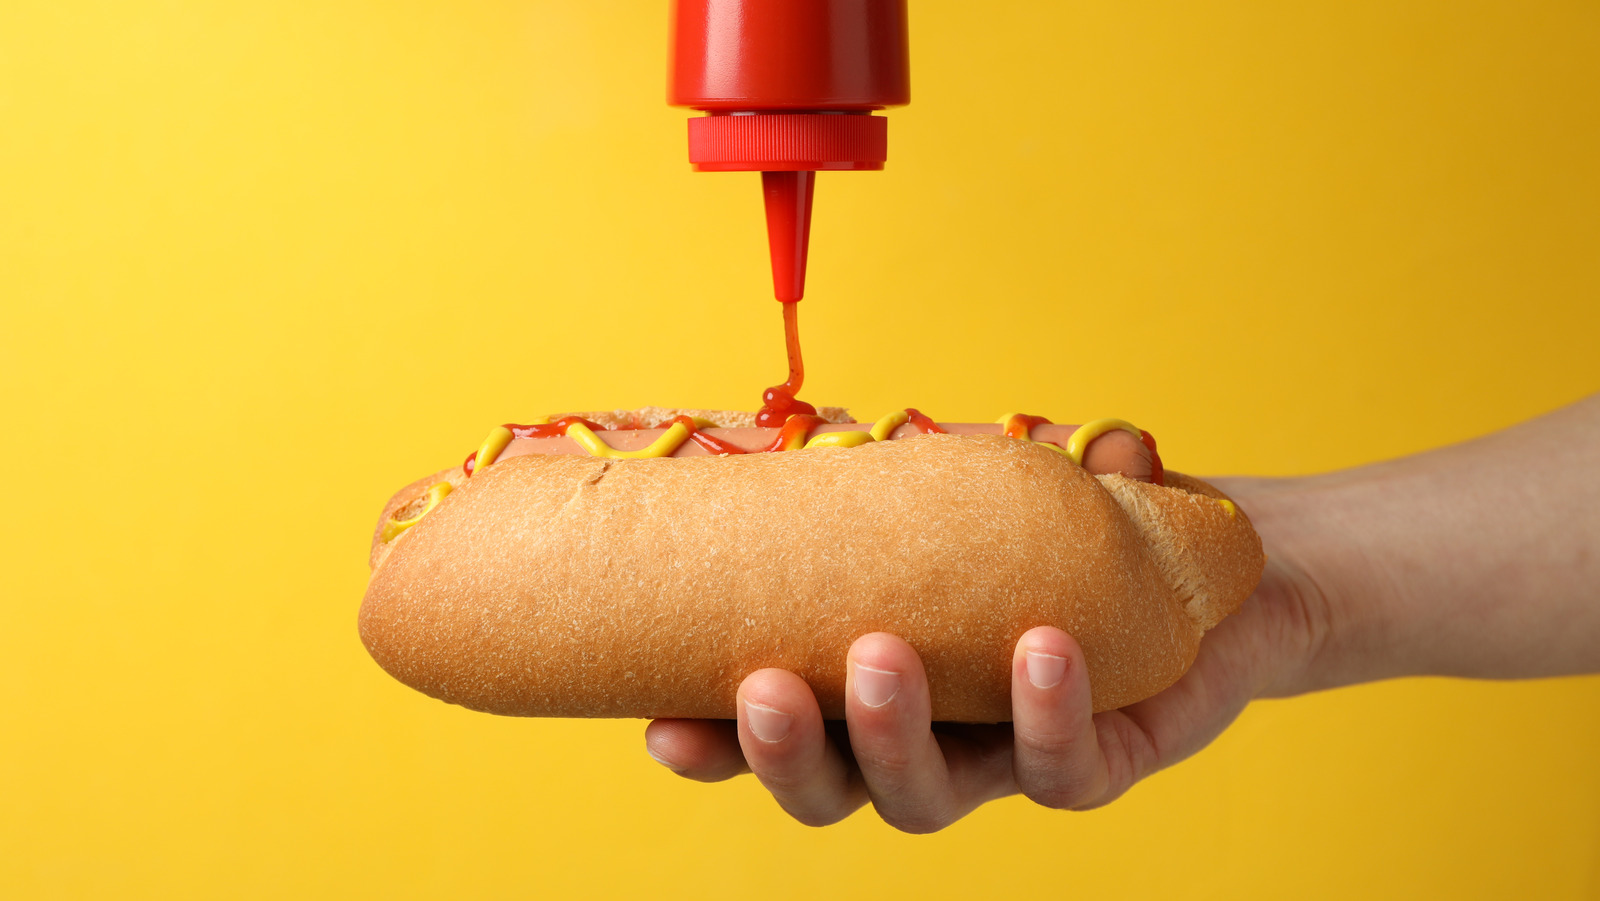 Cuiseur à Hot-Dogs 1500 W Machine à Hot-Dog en Acier Inoxydable avec Plage de Température 30-110 °C Appareil à Hot-Dog pour Cantines Boulangeries Cafés Restaurants 